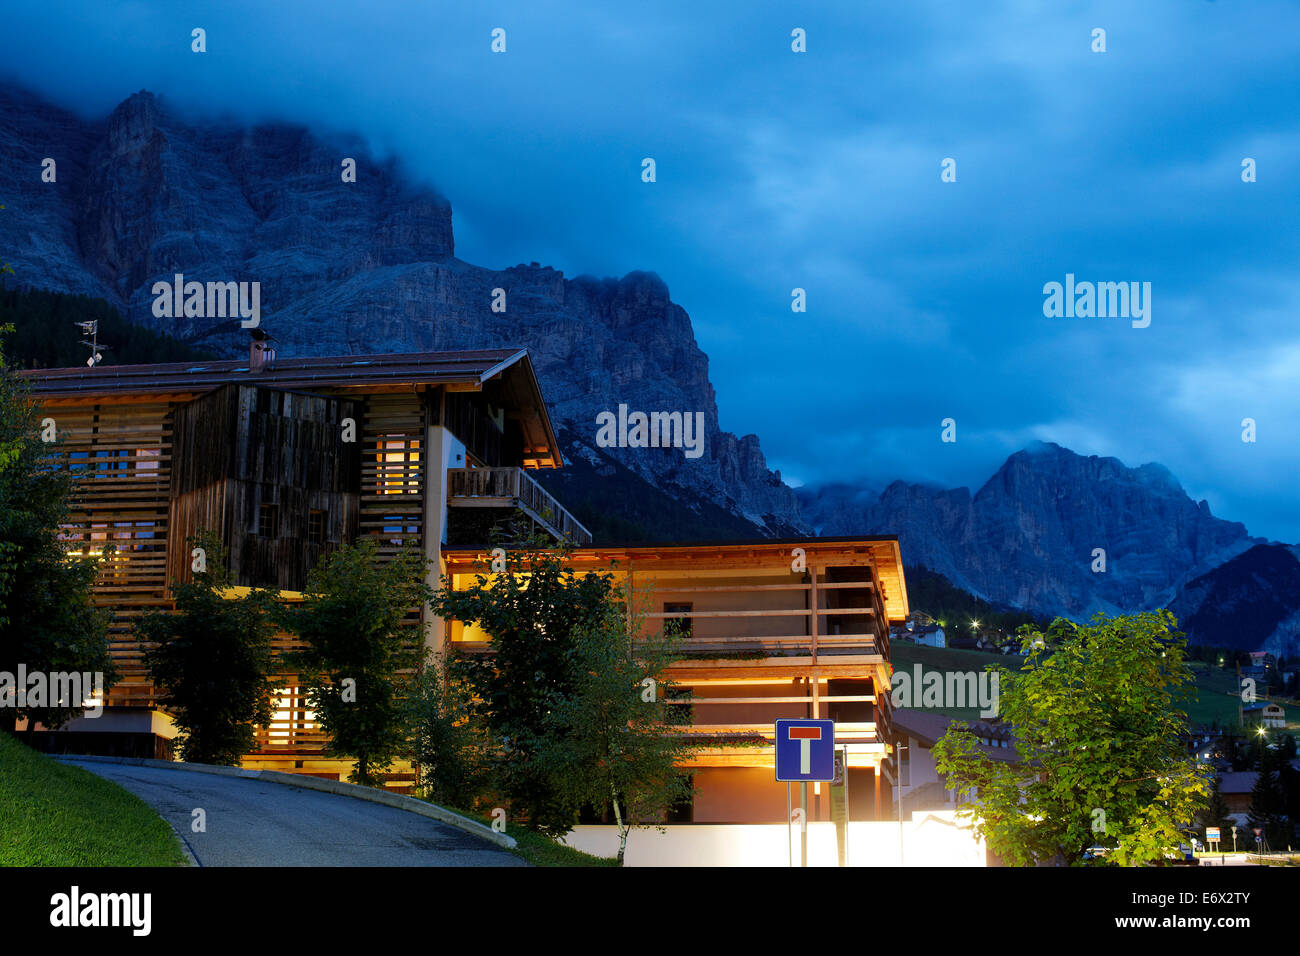 Hôtel Lagacio Mountain Residence Situé dans Kleiner Lagazuoi dans le village de S. Cassiano, Alta Badia, Italie Banque D'Images